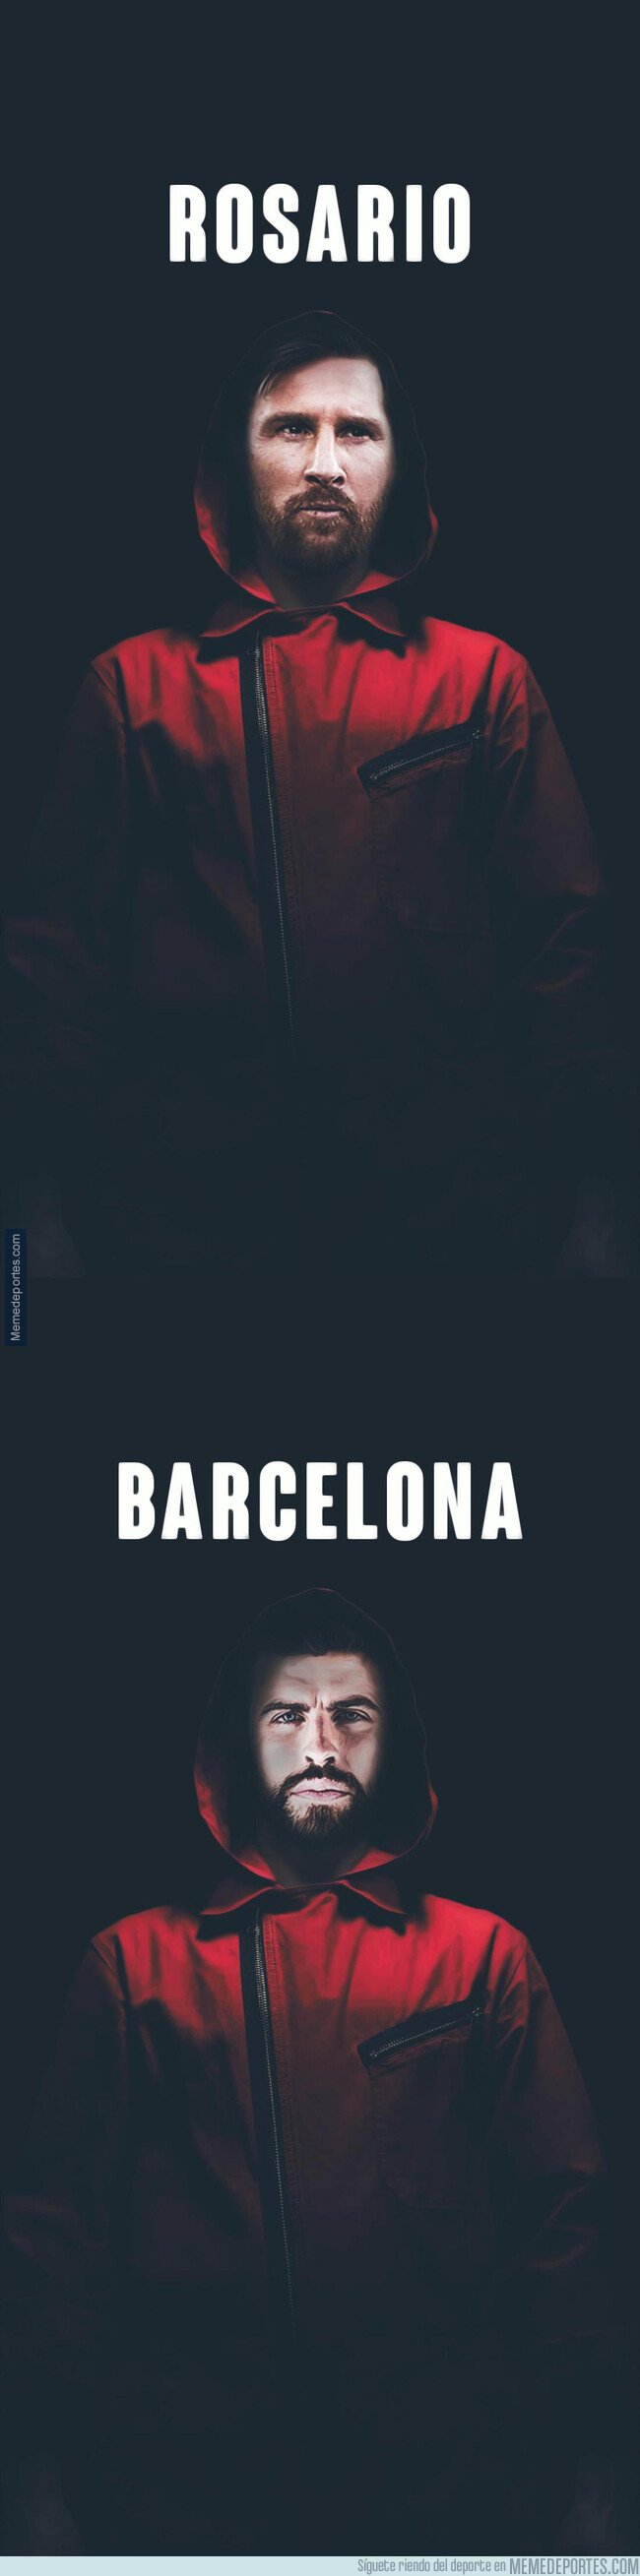 1084394 - La Casa de Papel empieza a hacer furor en Barcelona con la posible llegada de Neymar